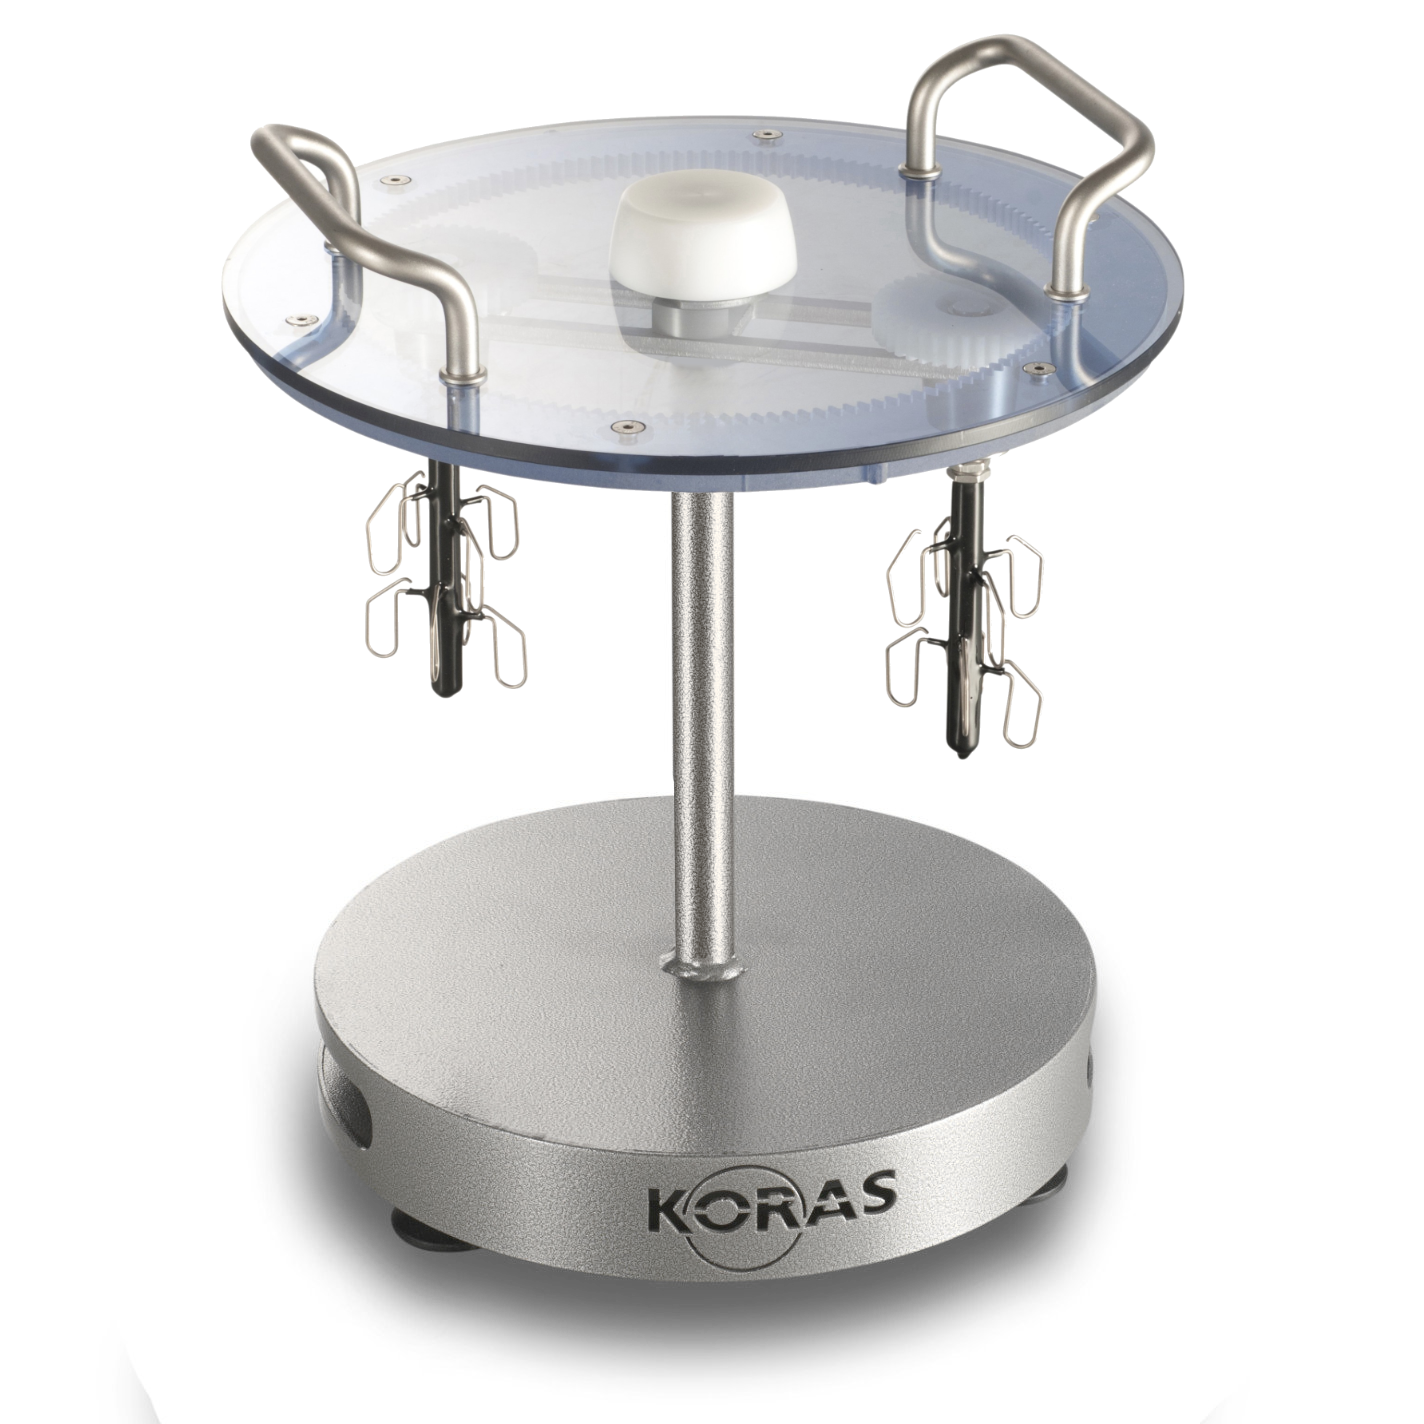 Jewelry Polishing Machines By Koras